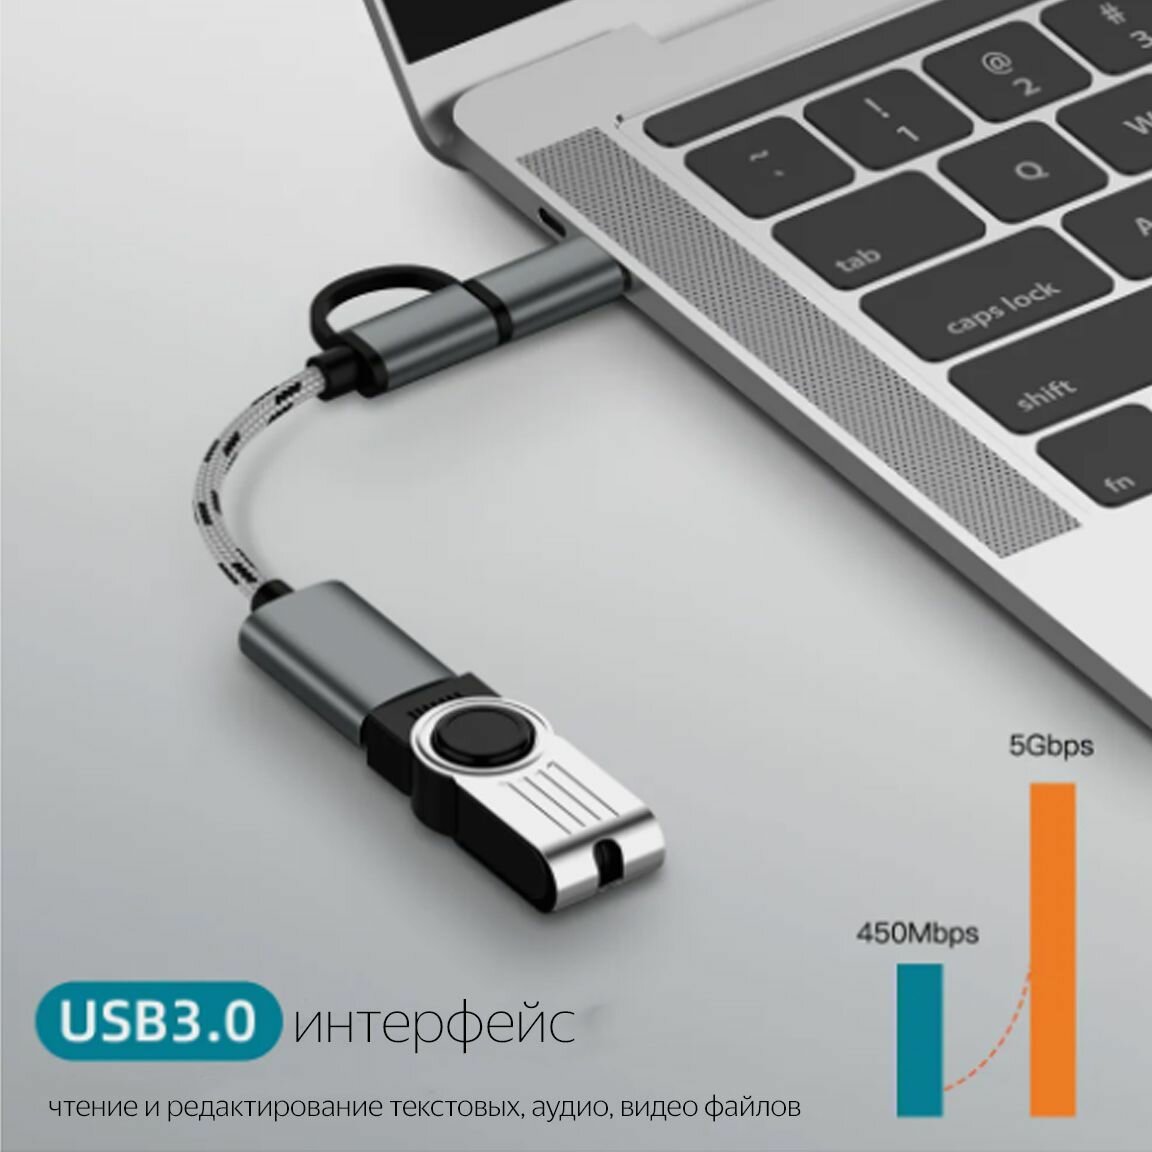 Адаптер-переходник 2 в 1/USB 3.0, USB type C(тайпси)/OTG(отг)/microUSB